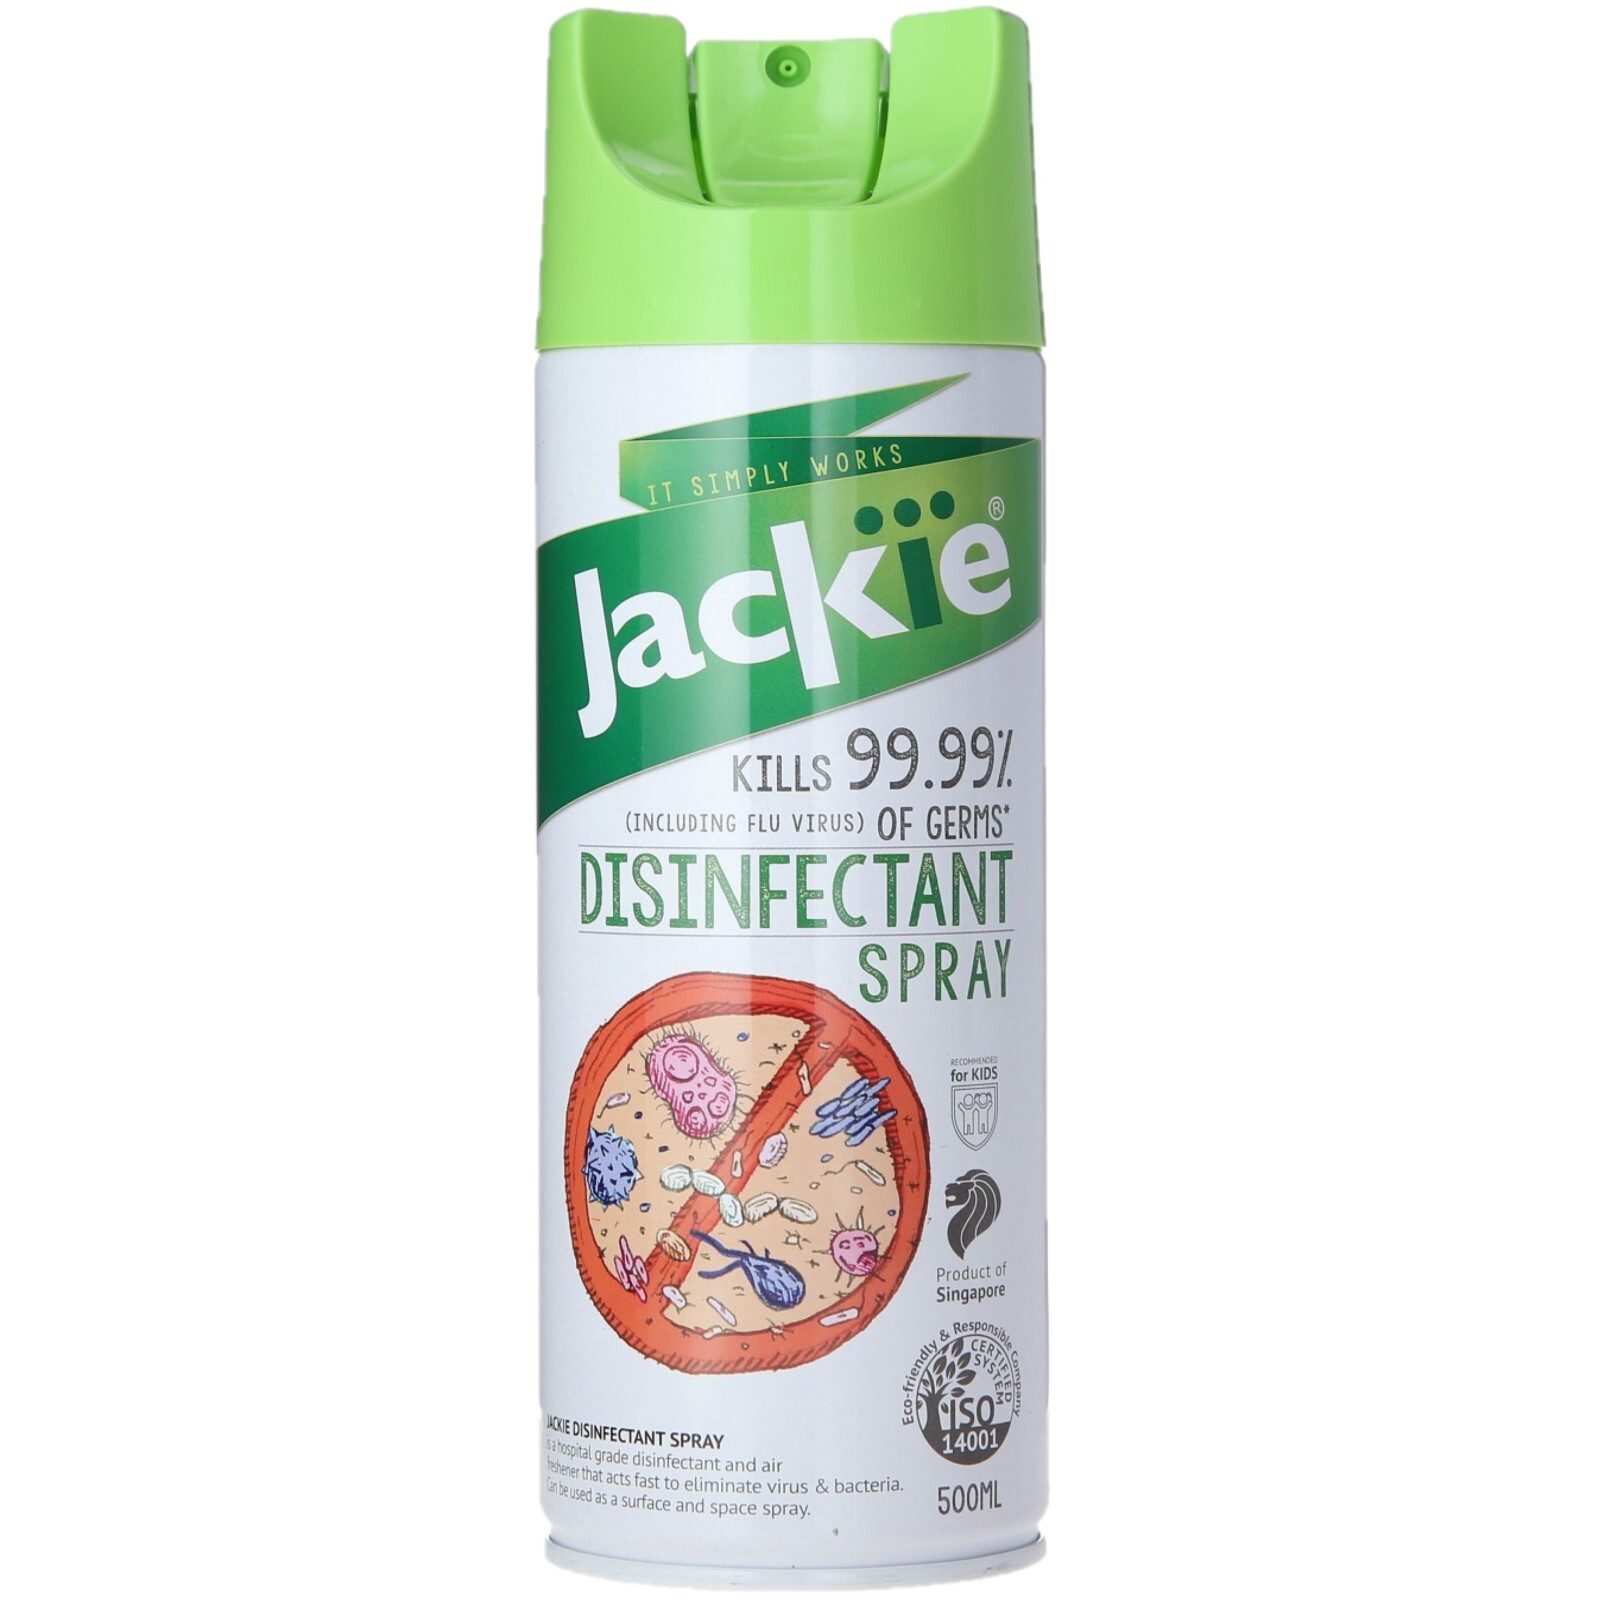 https://sahar.ph/wp-content/uploads/2023/01/Jackie-Disinfectant-Huge.jpg